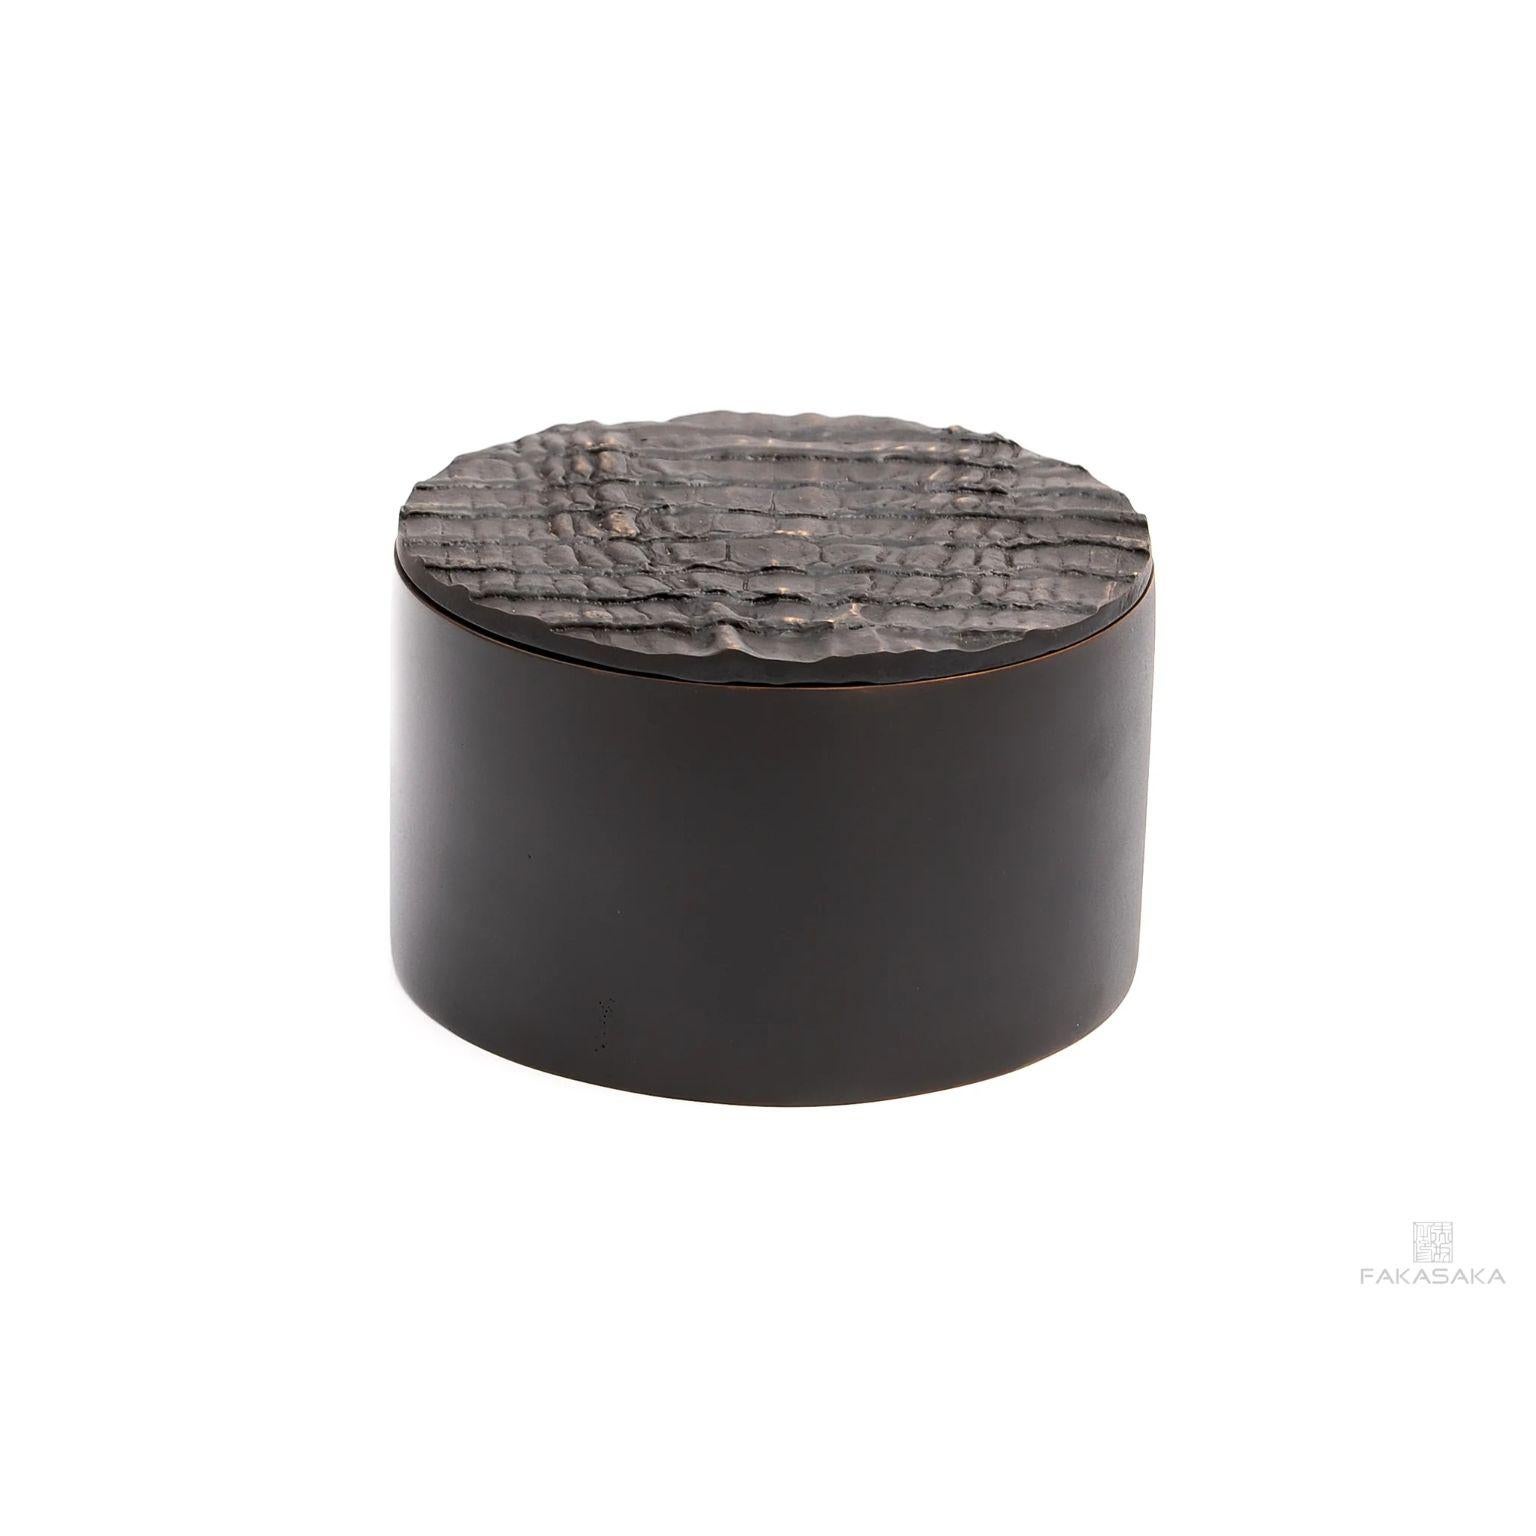 Boîte Aretha par Fakasaka Design
Dimensions : L 15 cm P 15 cm H 9,5 cm.
Matériaux : bronze noir/brun.
Disponible également en bronze poli.

 FAKASAKA est une société de design spécialisée dans la production de meubles, d'éclairages, d'objets